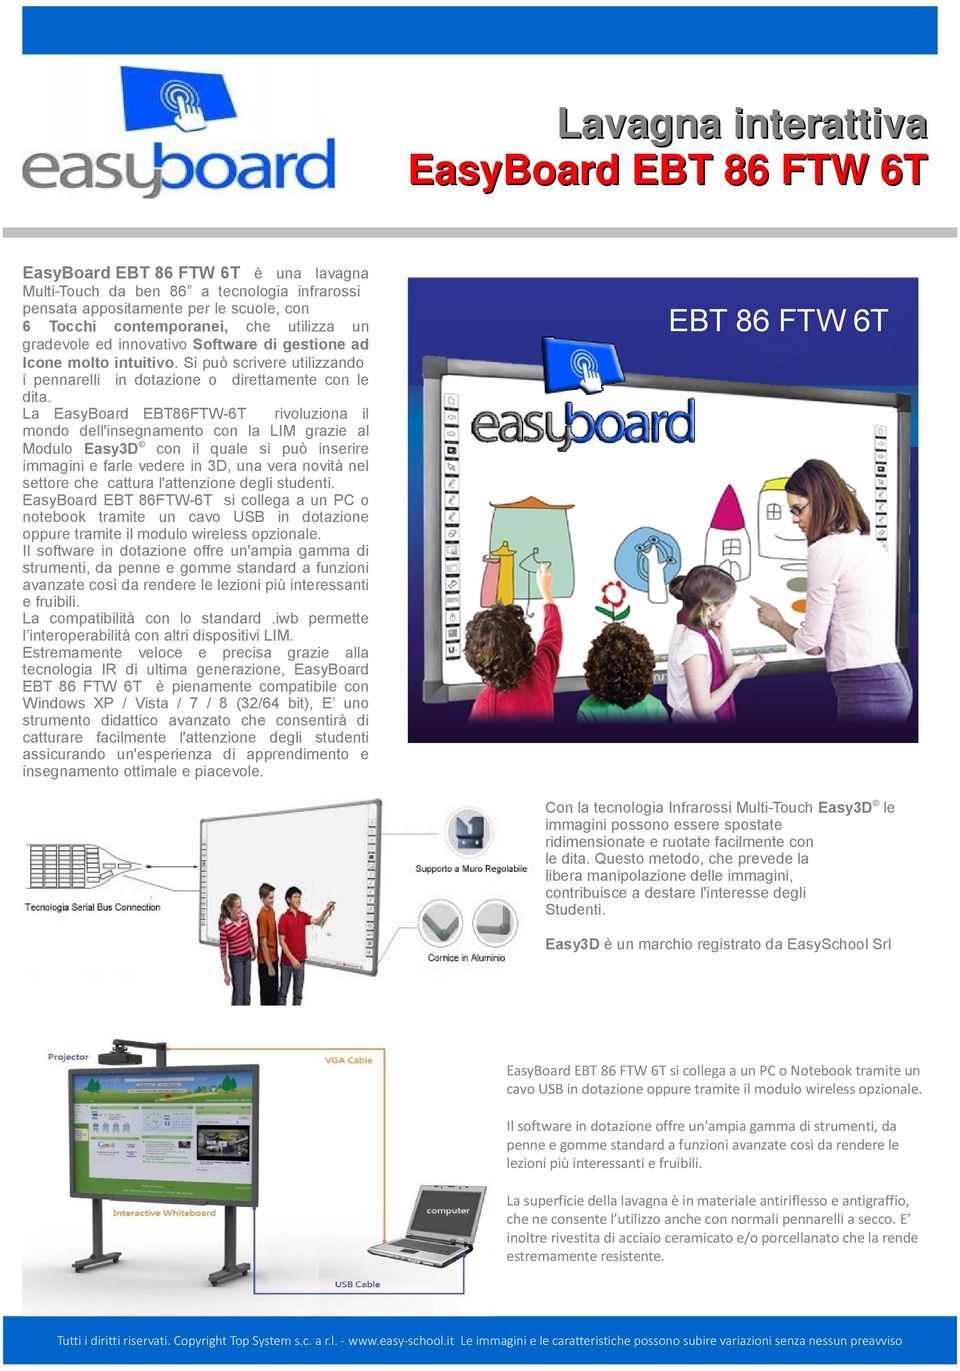 La EasyBoard EBT86FTW-6T rivoluziona il mondo dell'insegnamento con la LIM grazie al Modulo Easy3D con il quale si può inserire immagini e farle vedere in 3D, una vera novità nel settore che cattura